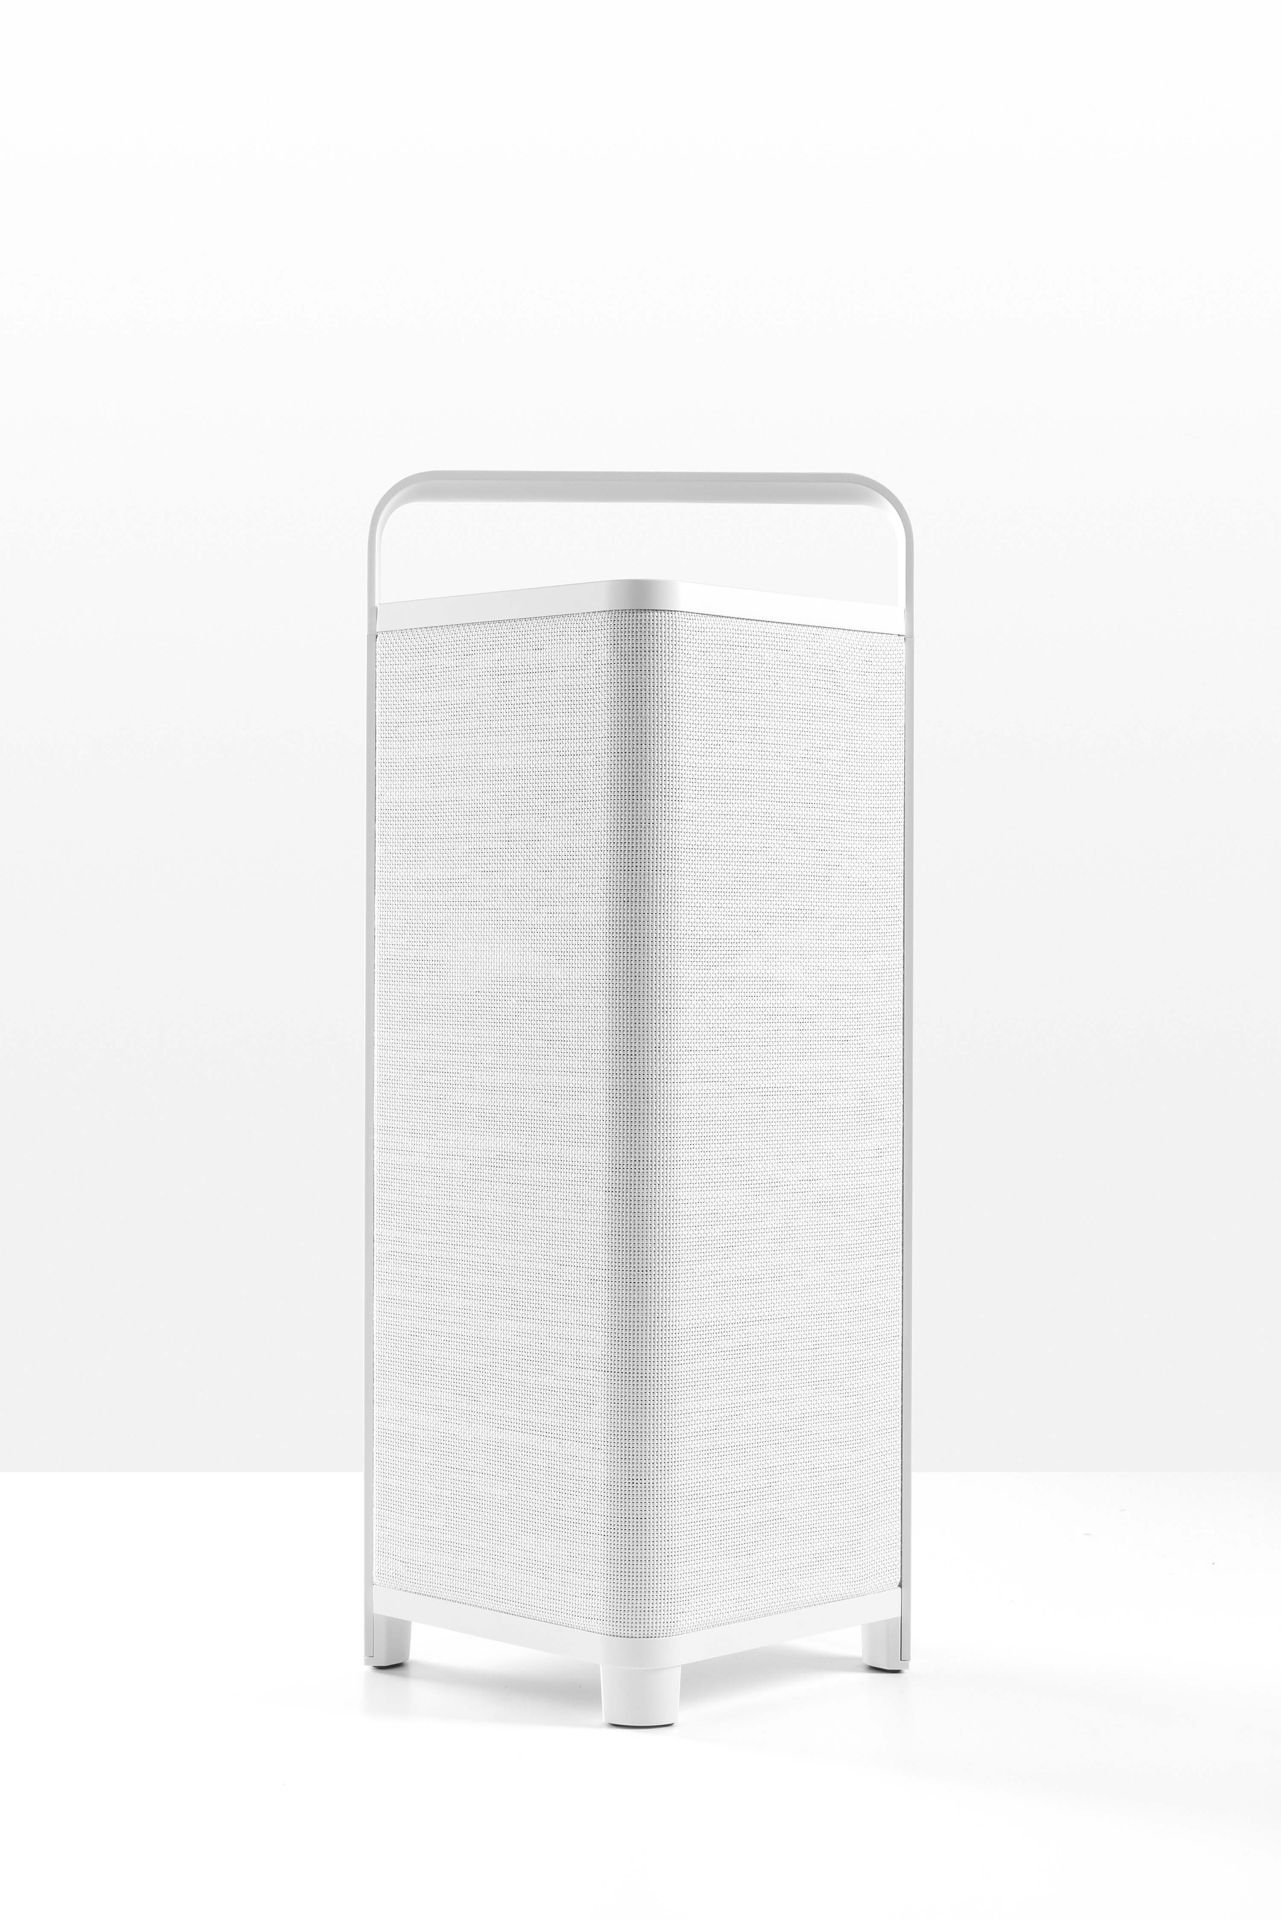 Escape tragbarer Outdoor-Lautsprecher  P6 Air | WiFi in der Farbe Weiß